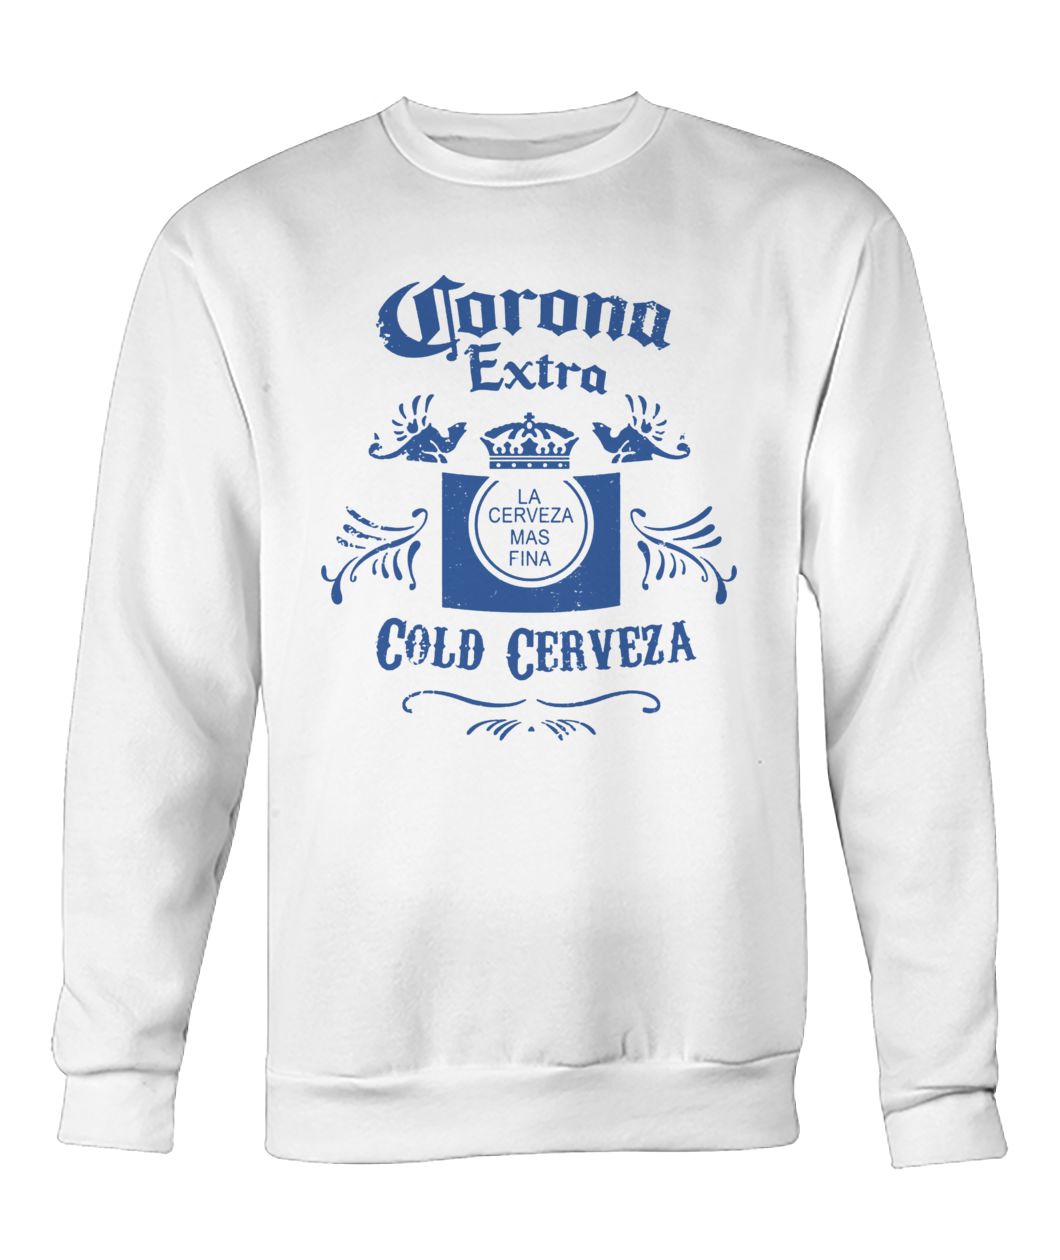 Corona extra cold cerveza crew neck sweatshirt